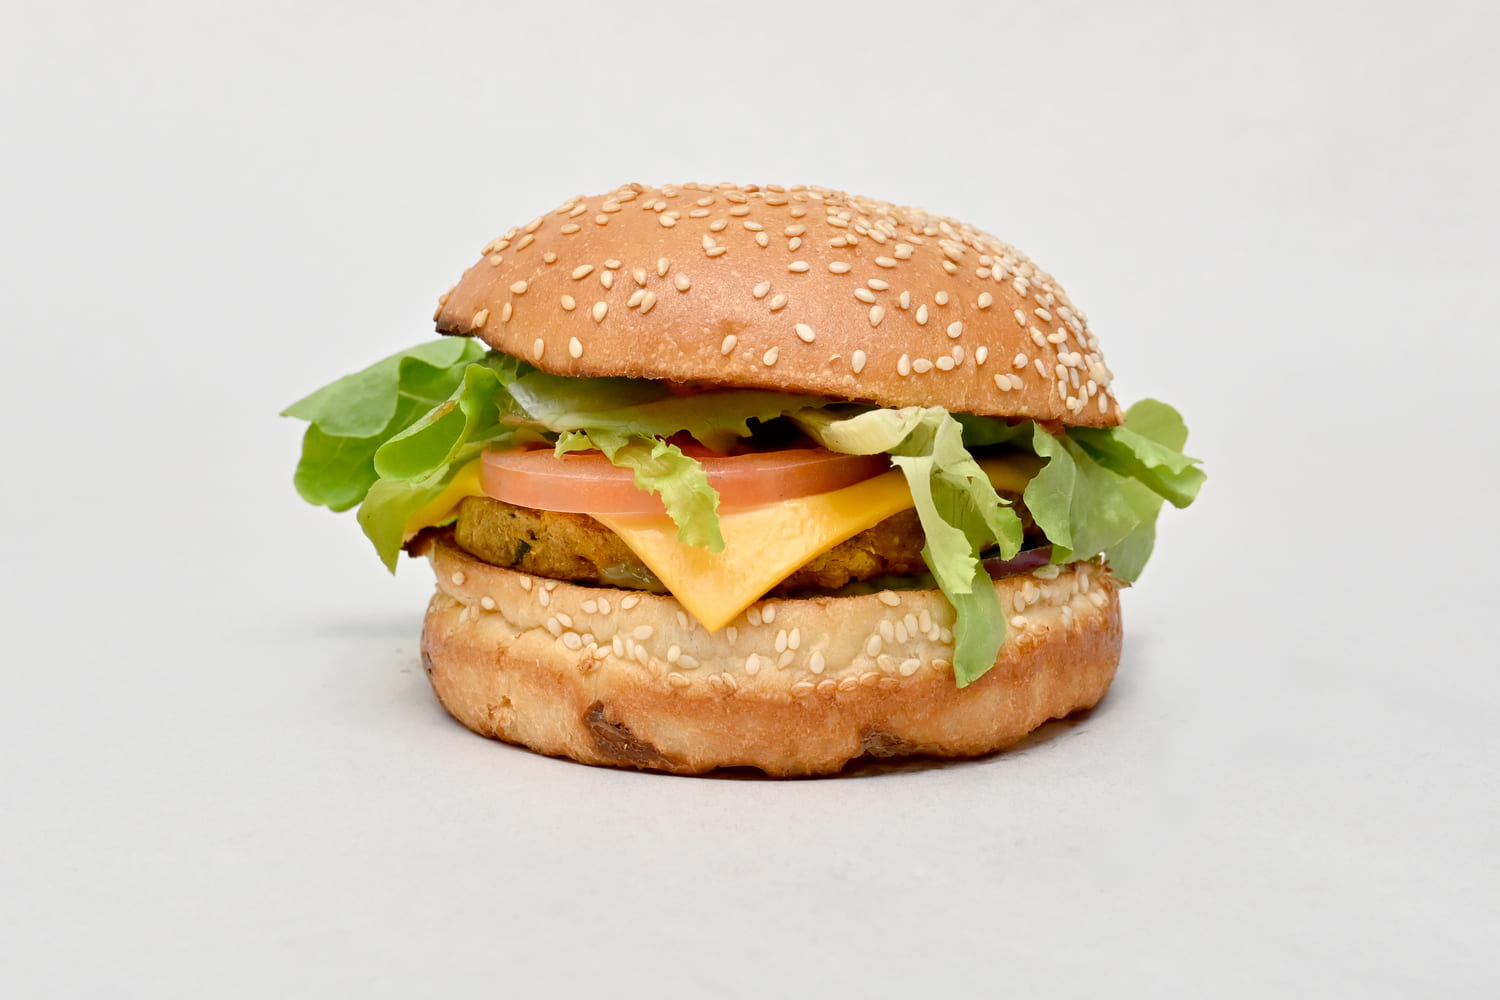 Vegetarian burger